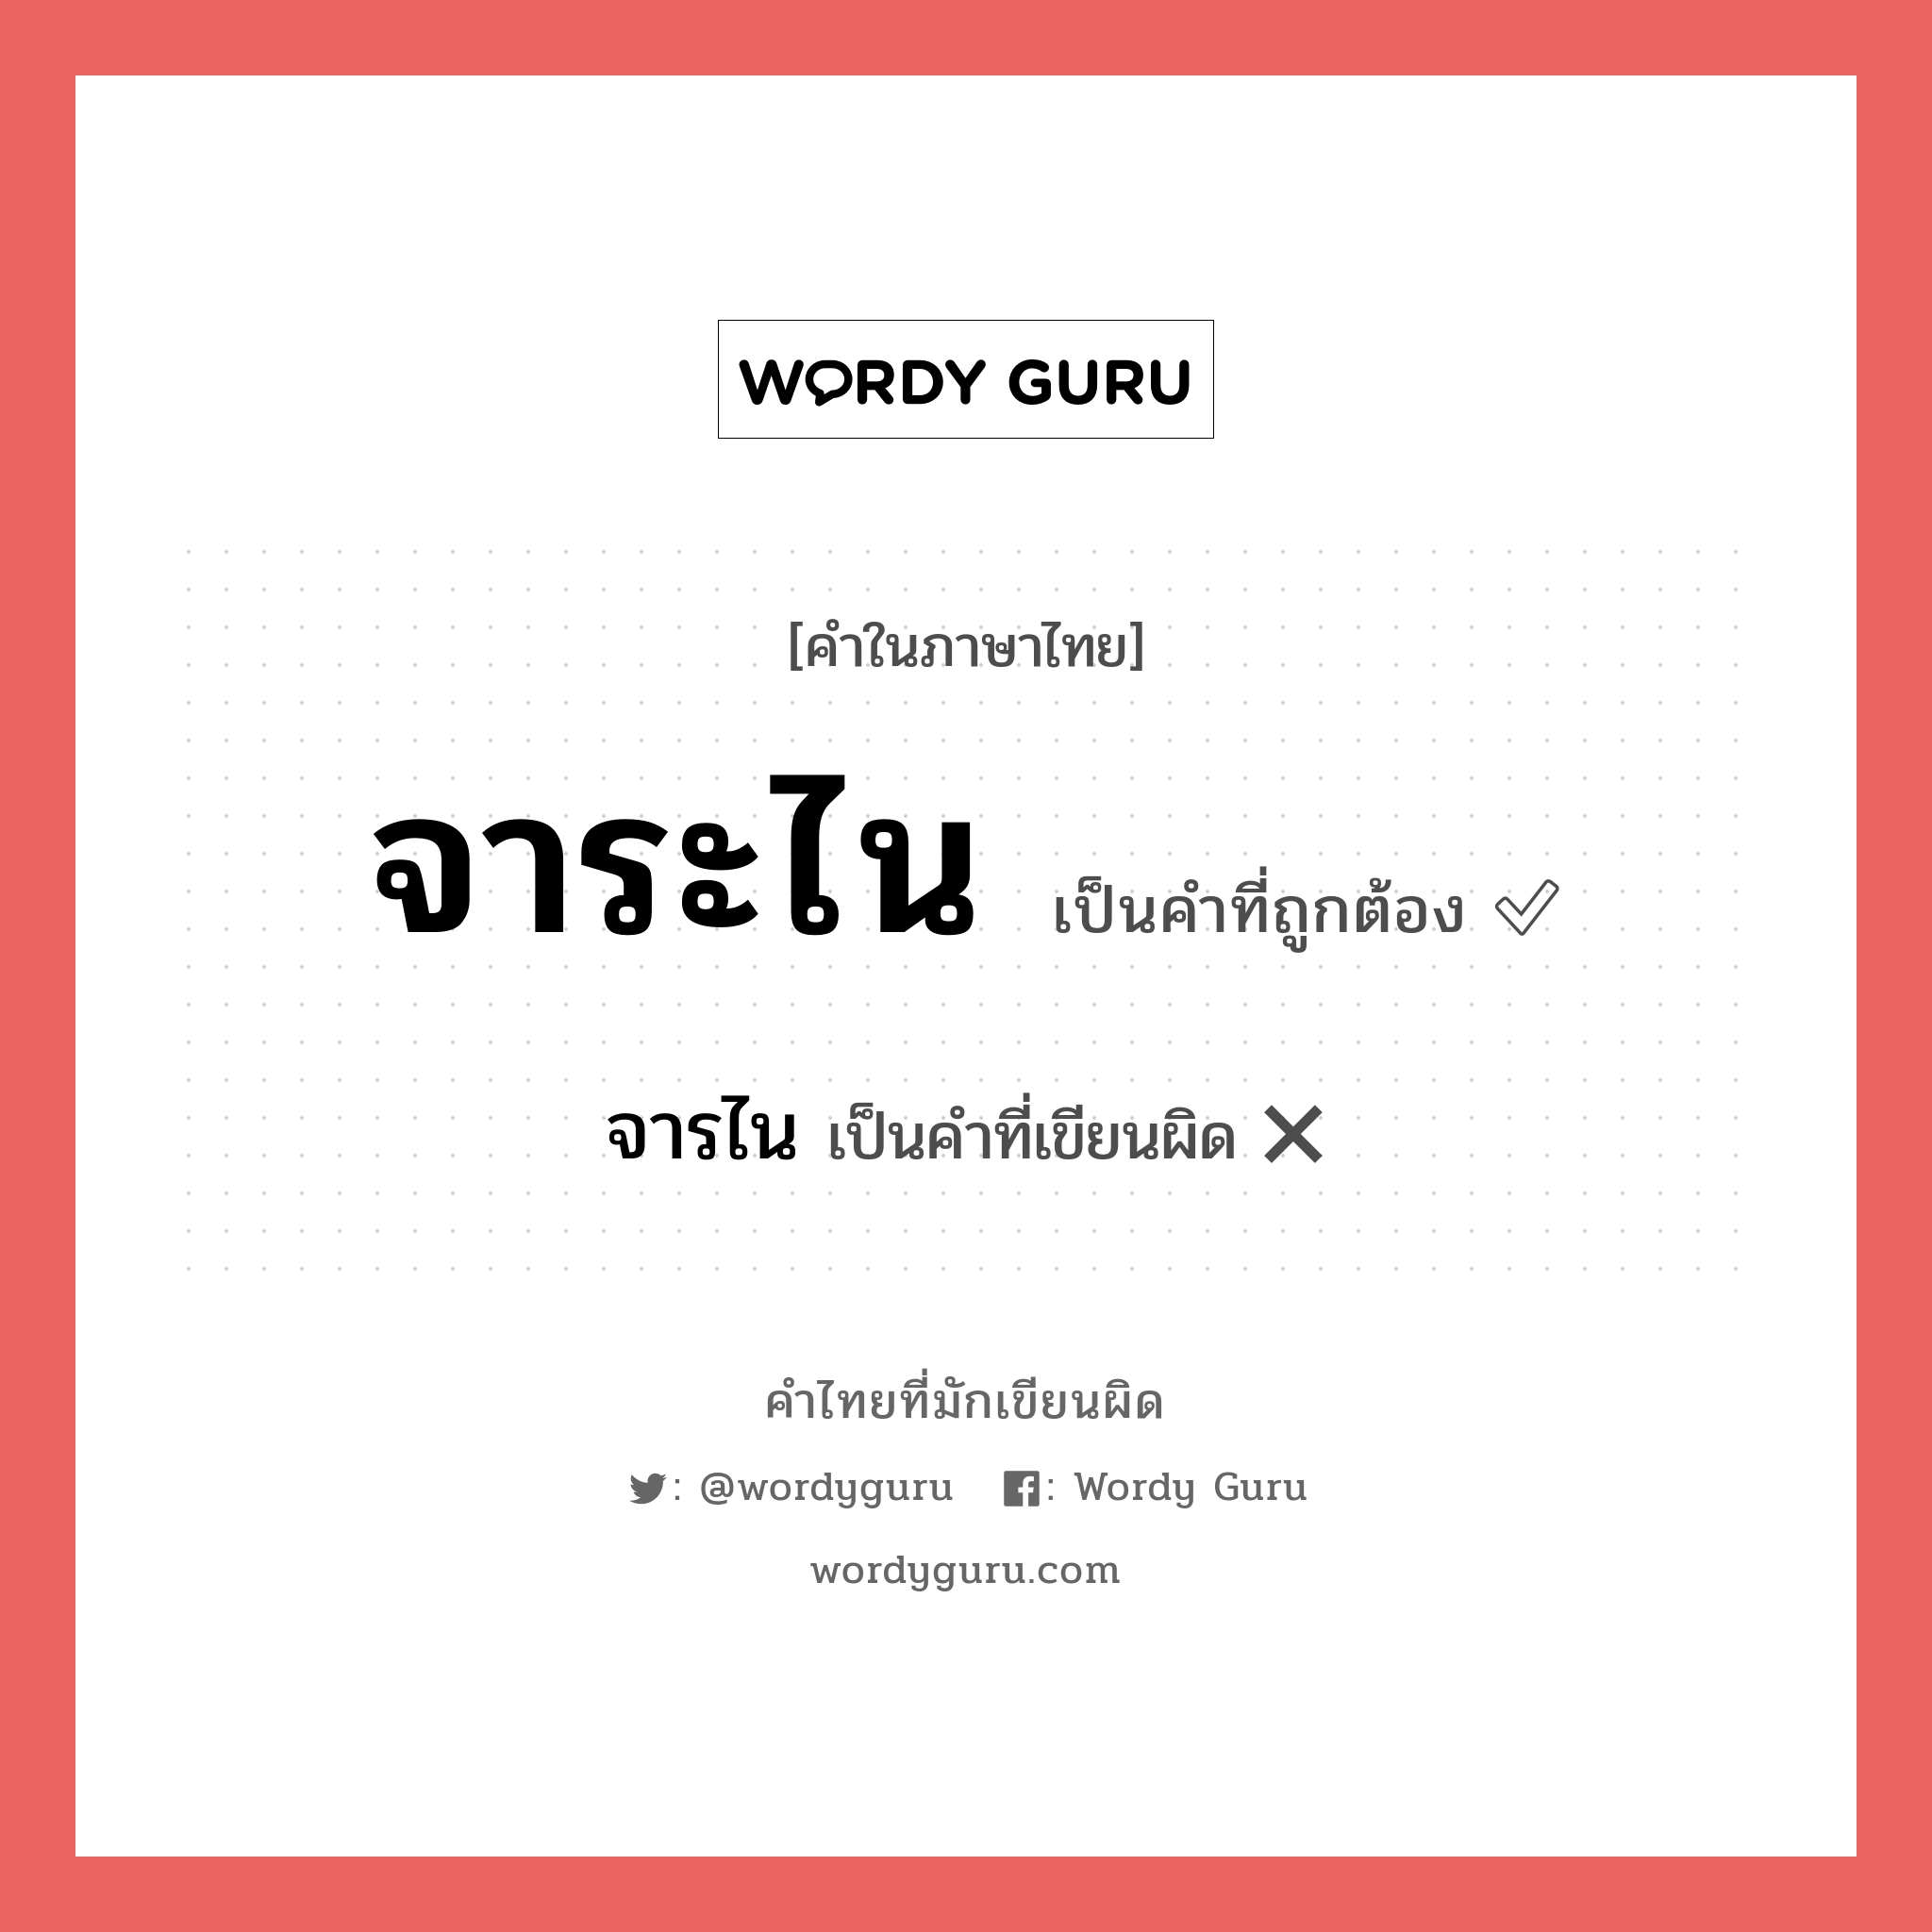 จารไน หรือ จาระไน คำไหนเขียนถูก?, คำในภาษาไทยที่มักเขียนผิด จารไน คำที่ผิด ❌ จาระไน